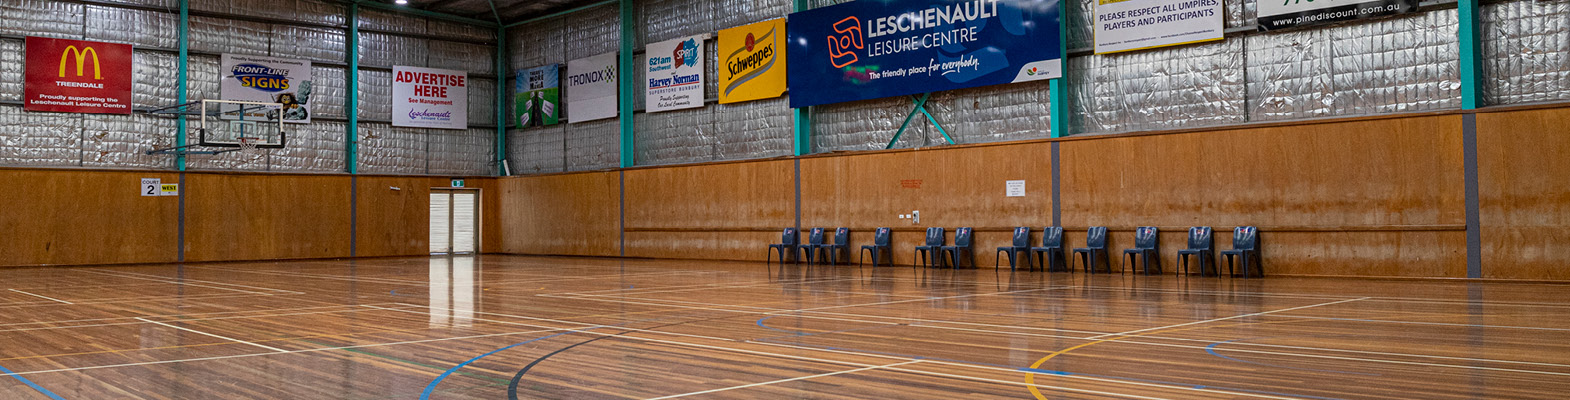 Leschenault Leisure Centre